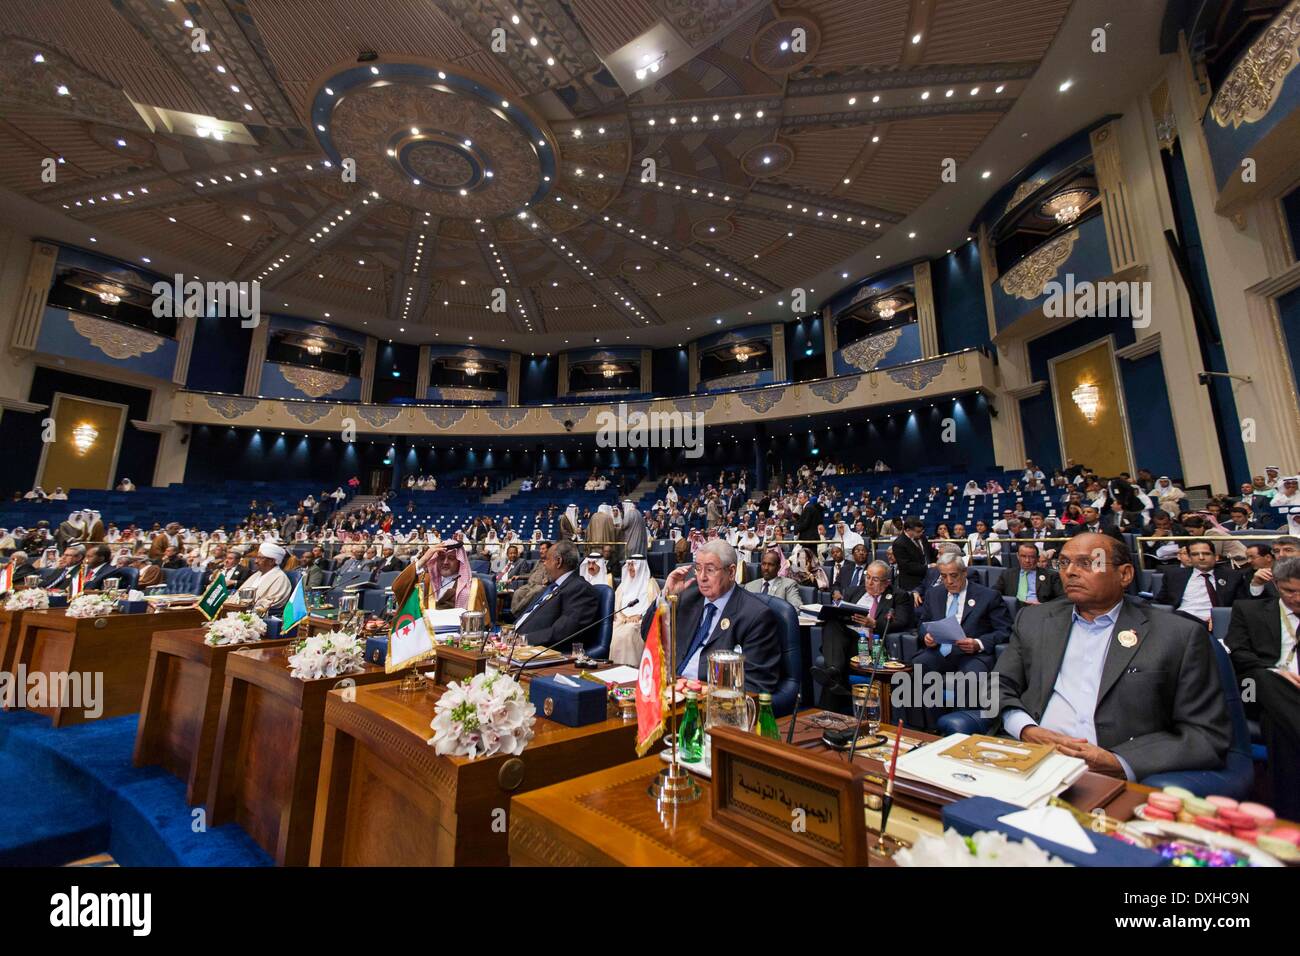 La ville de Koweït, Koweït. Mar 26, 2014. Les représentants des pays arabes, assister à la cérémonie de clôture du 25e Sommet de la Ligue arabe dans la ville de Koweït, Koweït, le 26 mars 2014. Les dirigeants des États arabes a conclu les deux jours du sommet de la Ligue arabe avec l'annonce de Déclaration de Koweït le mercredi à Bayan Palace au Koweït. Credit : Cui Xinyu/Xinhua/Alamy Live News Banque D'Images